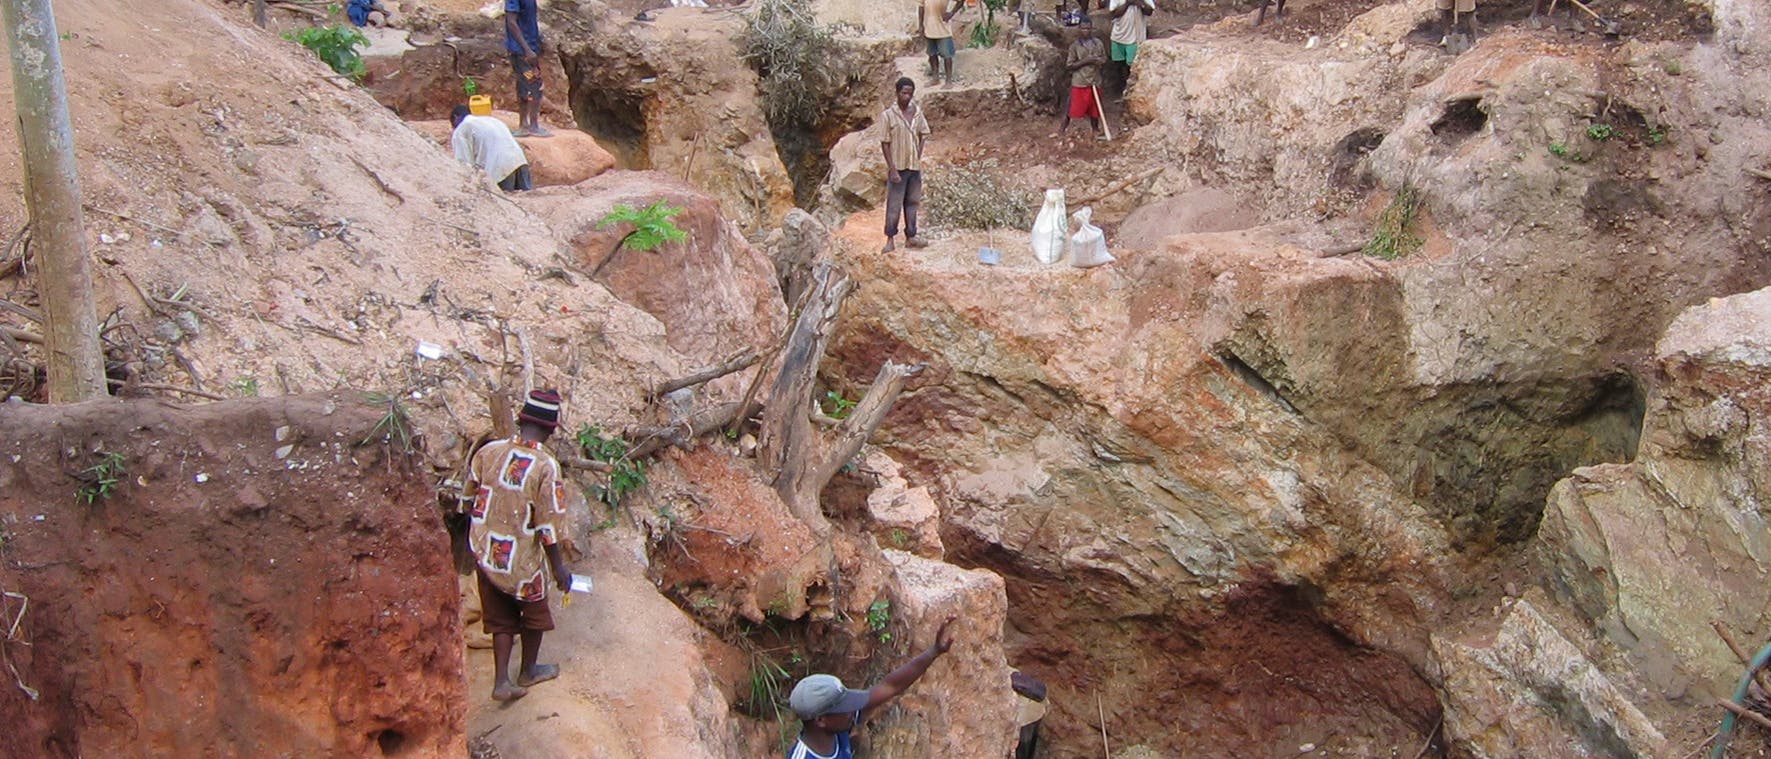 Knochenarbeit in einer kleinen Mine in Zentralafrika